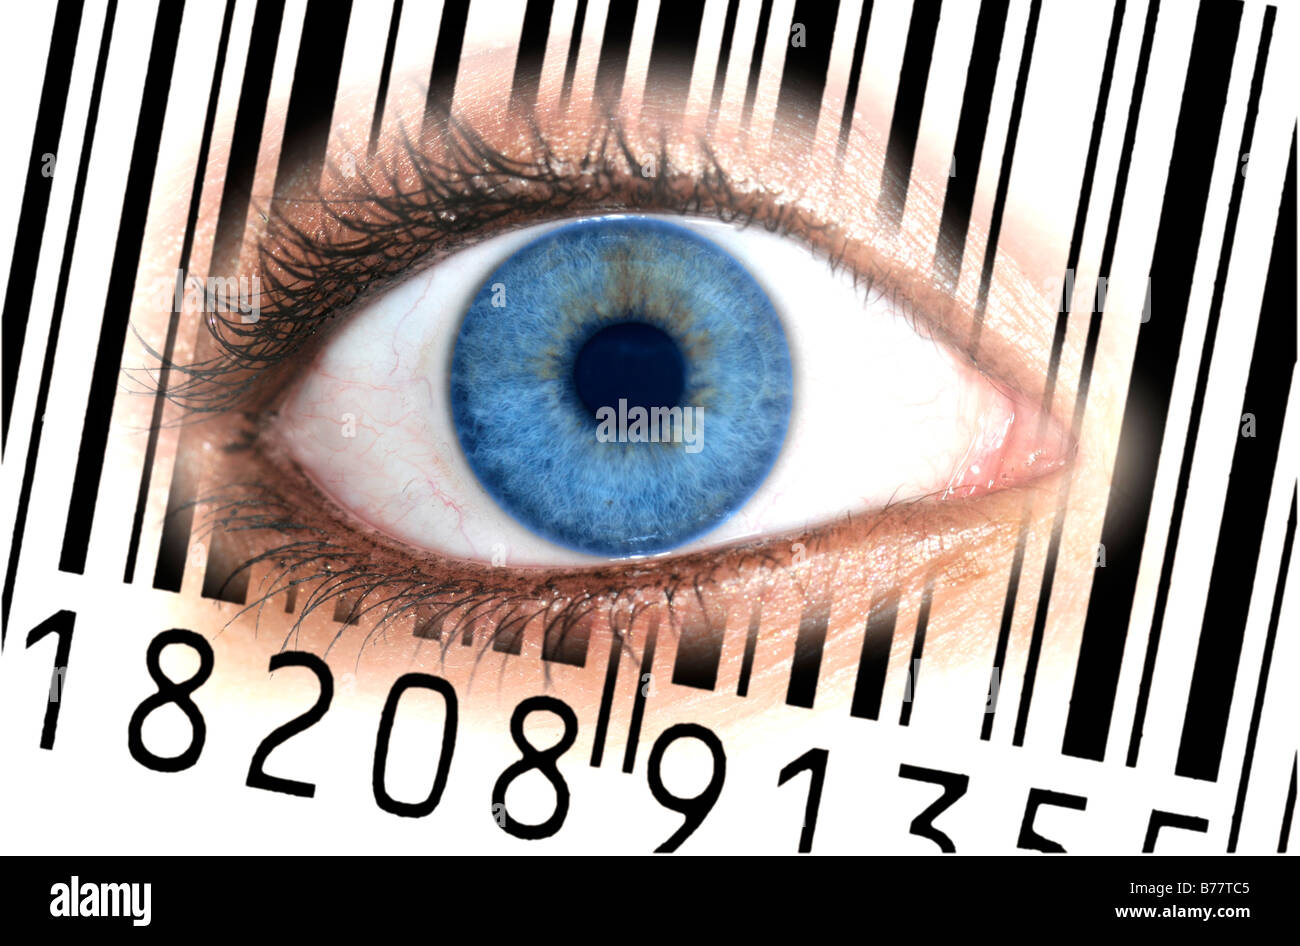 Close-up de un ojo con el código de barras EAN, European Article Number, sobre una imagen simbólica, iris transparentes para el cliente Foto de stock